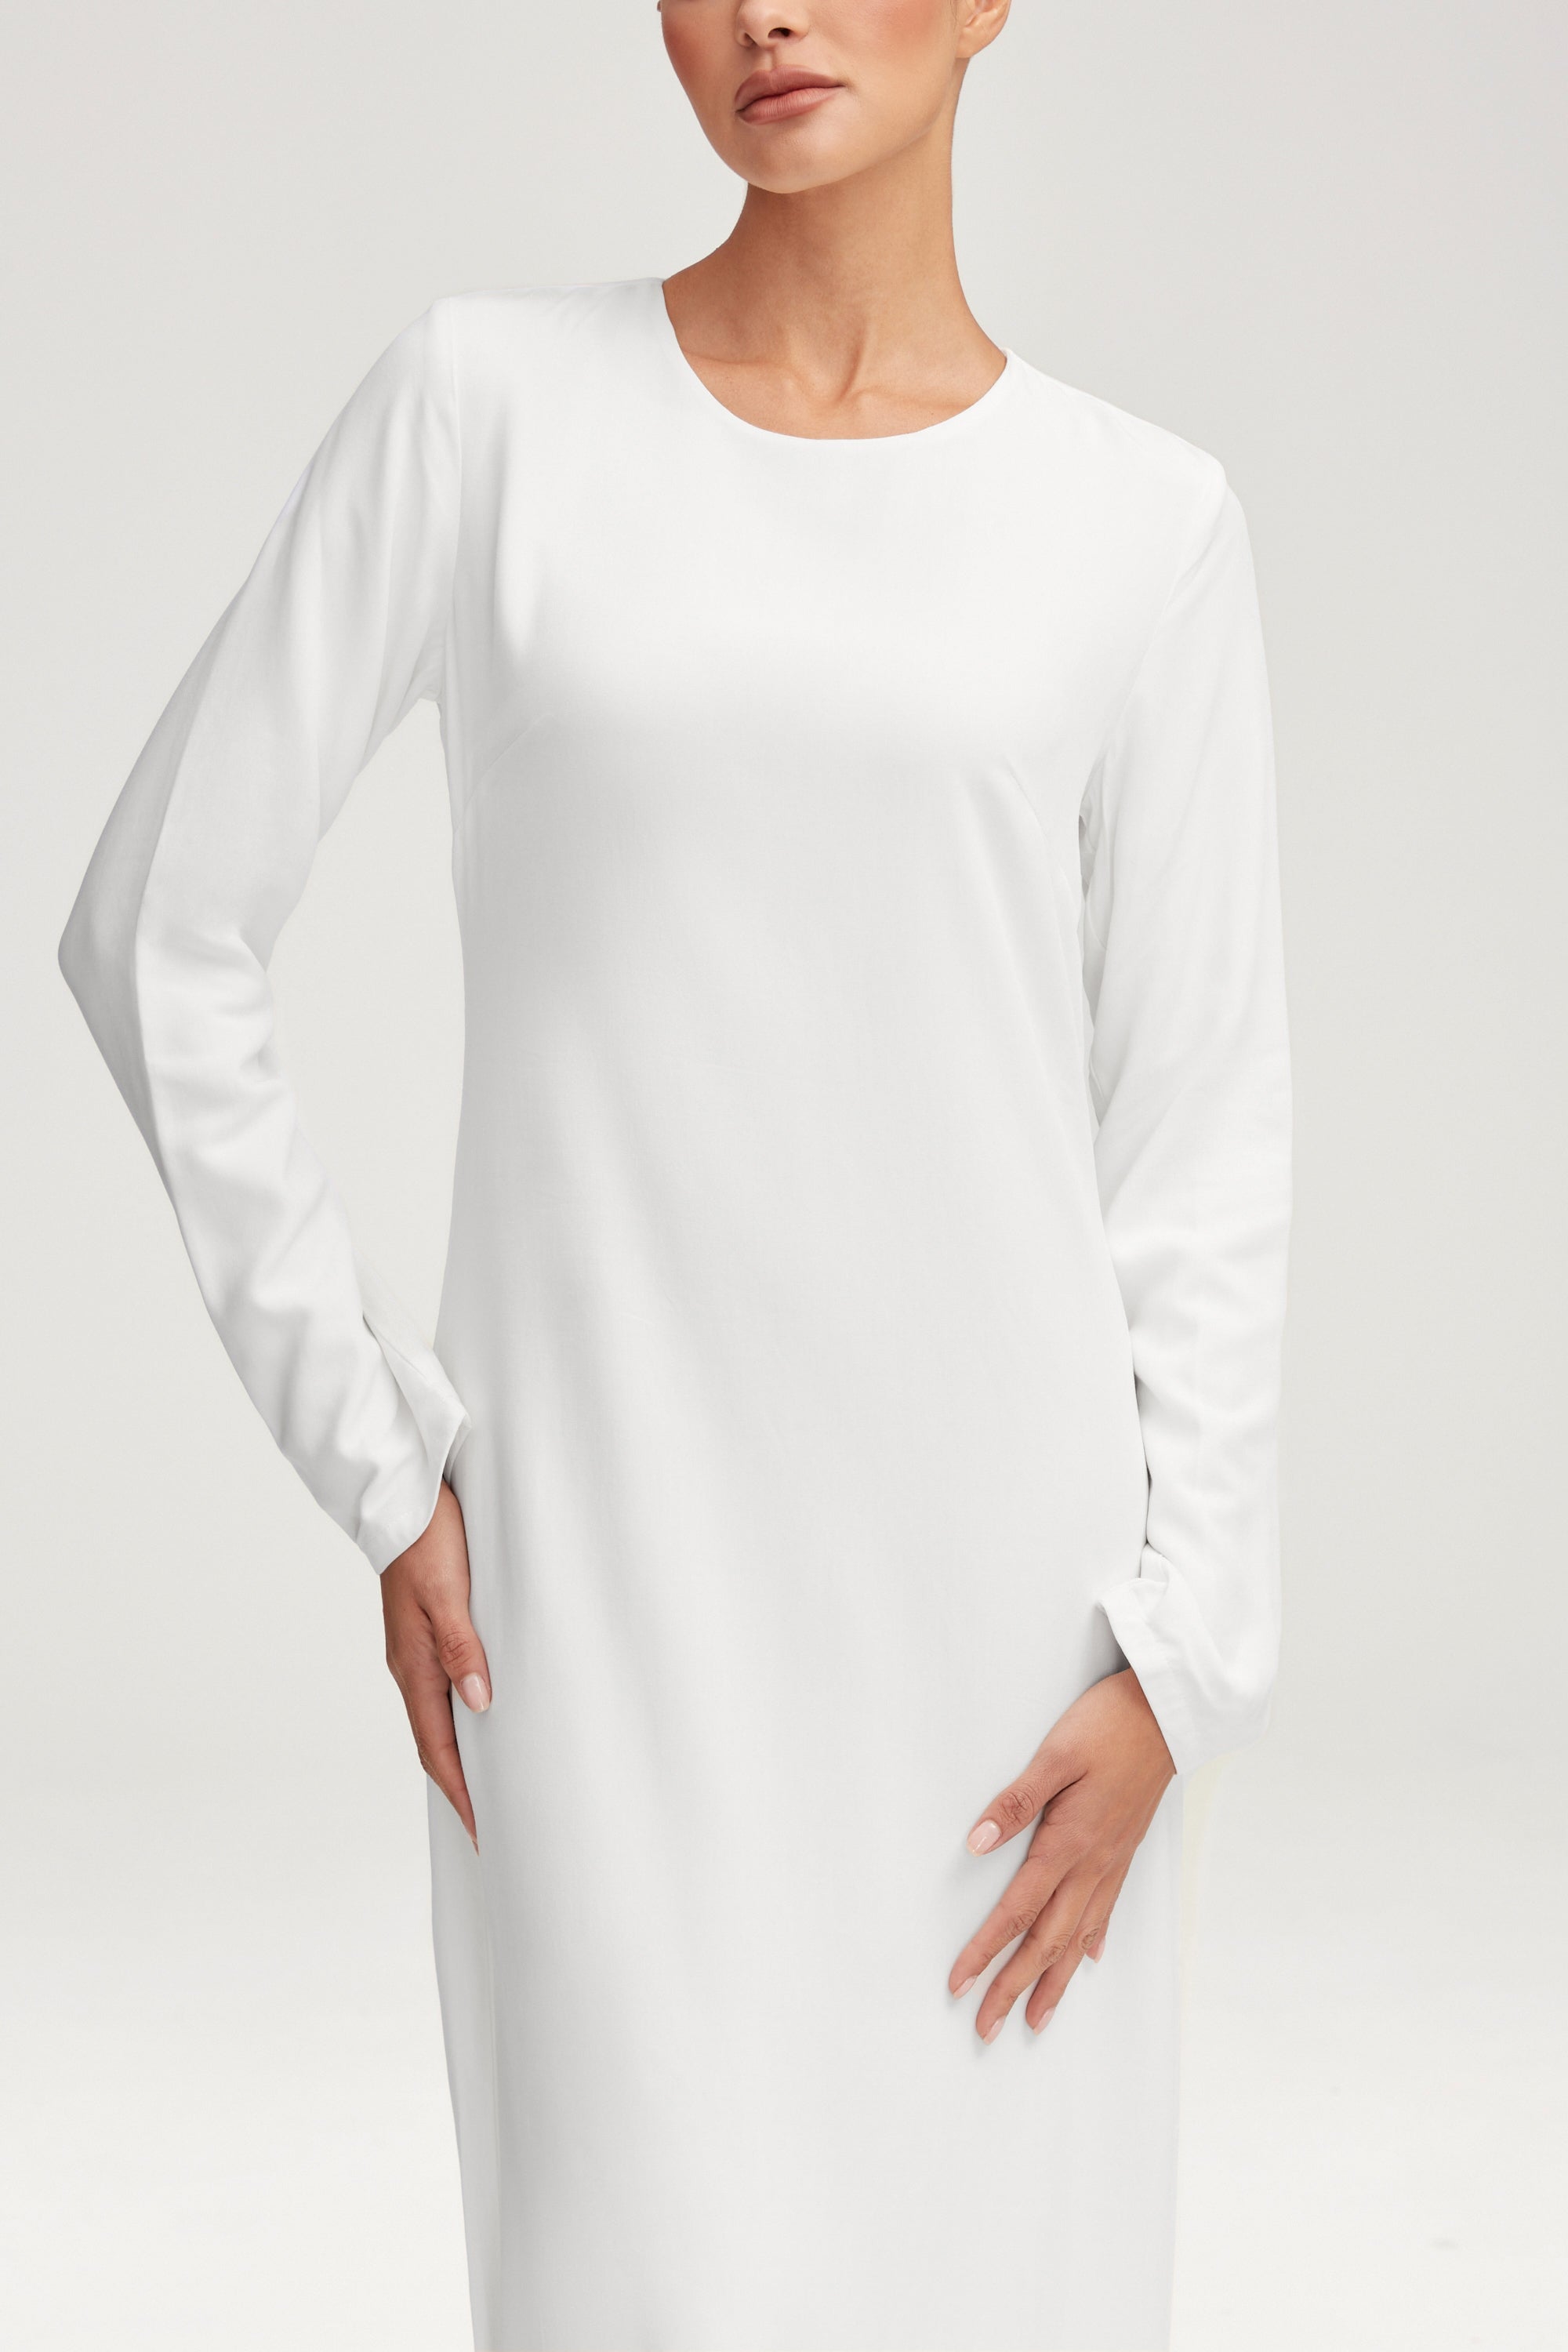 Basic Long Sleeve Maxi Dress - White Clothing saigonodysseyhotel 